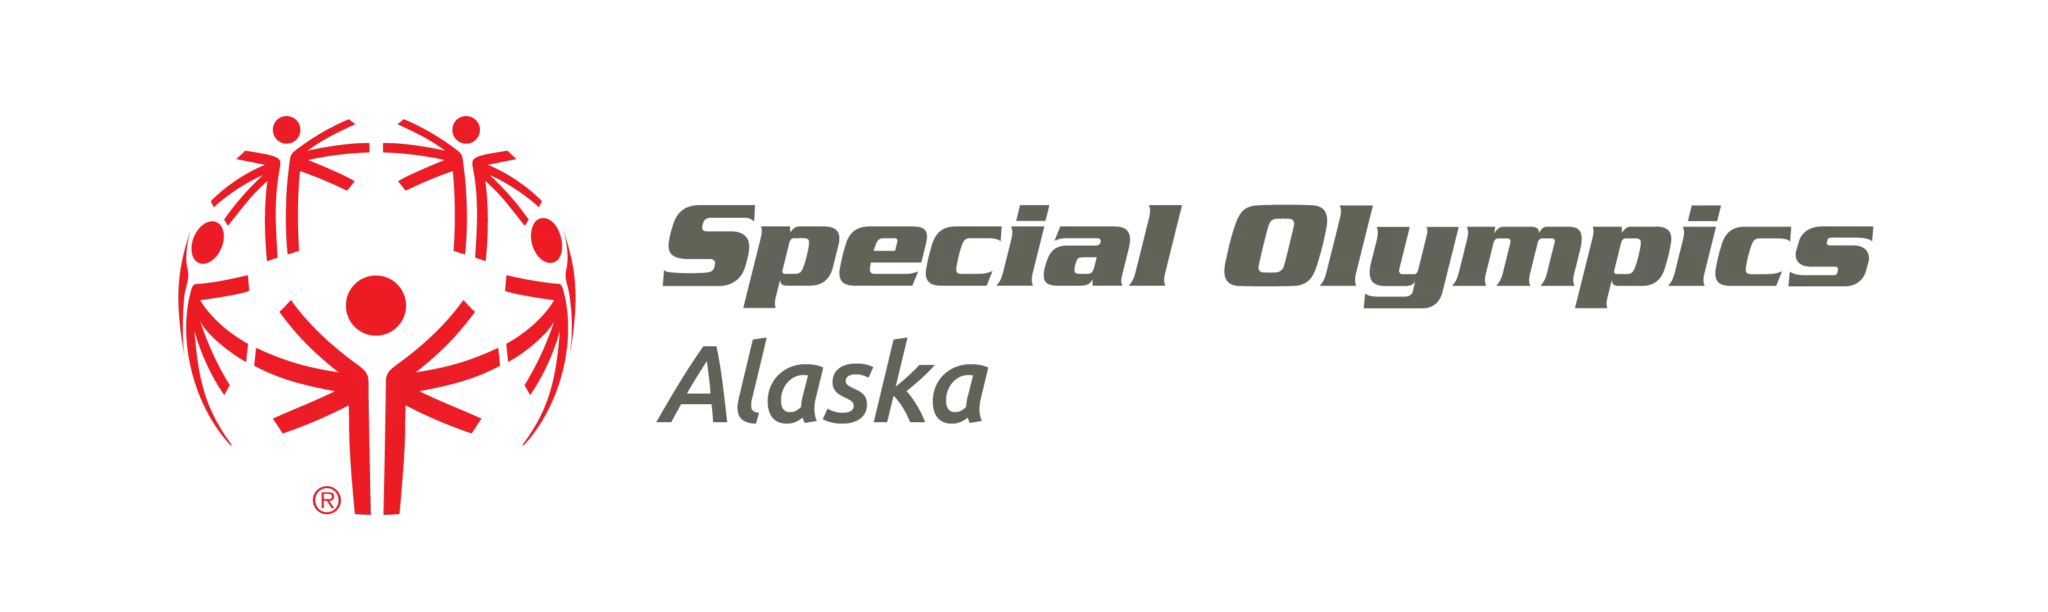 special olympics alaska